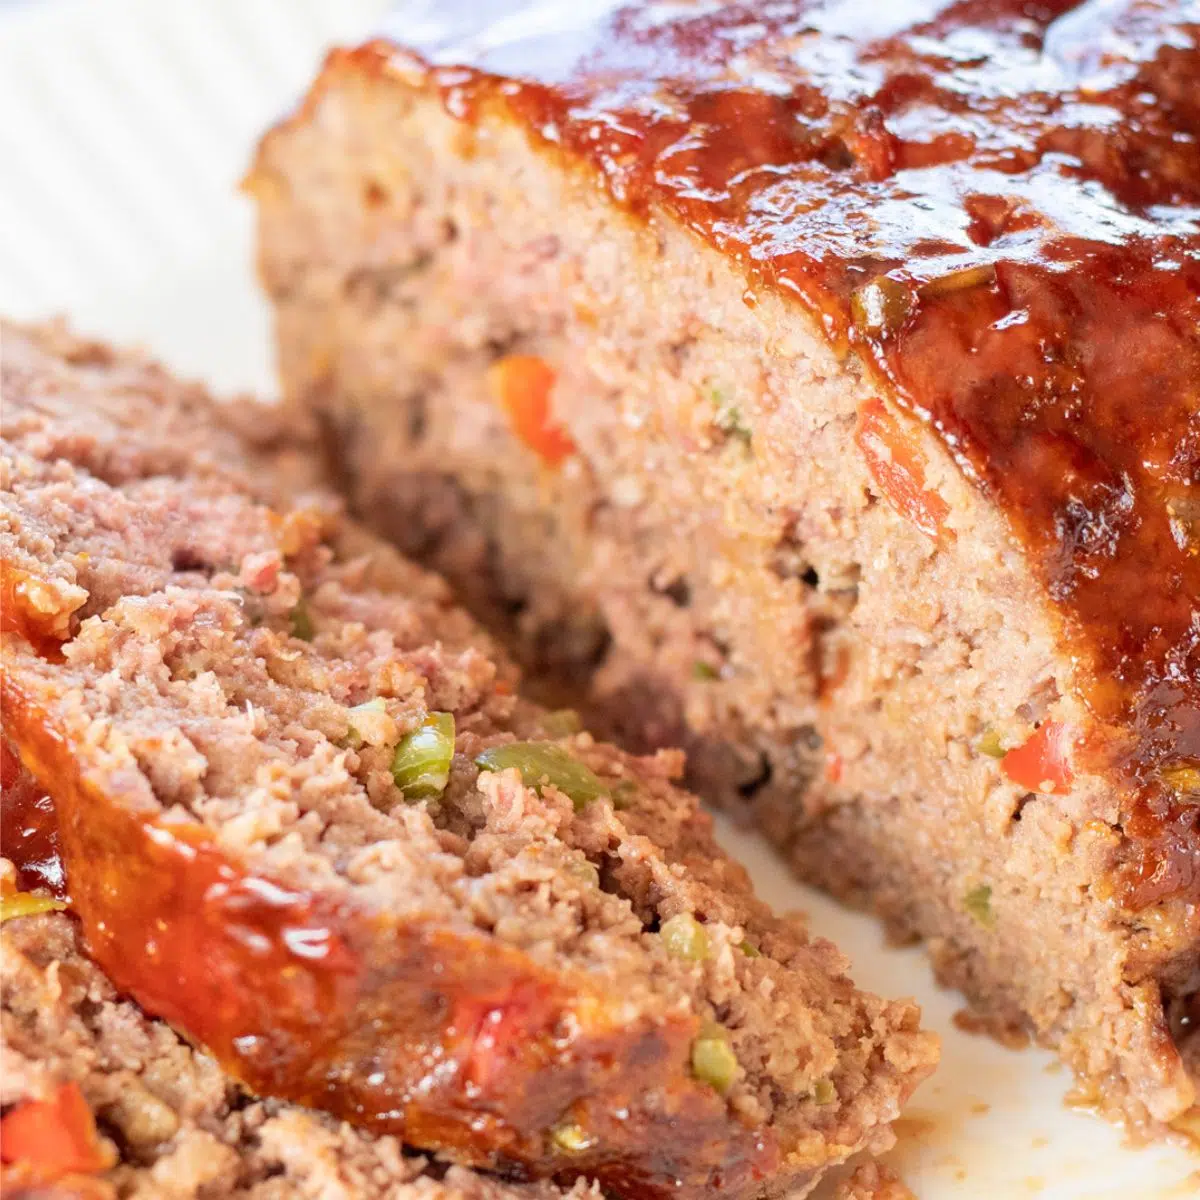 Panduan cara membuat meatloaf agar makan malam meatloaf Anda sempurna setiap saat.